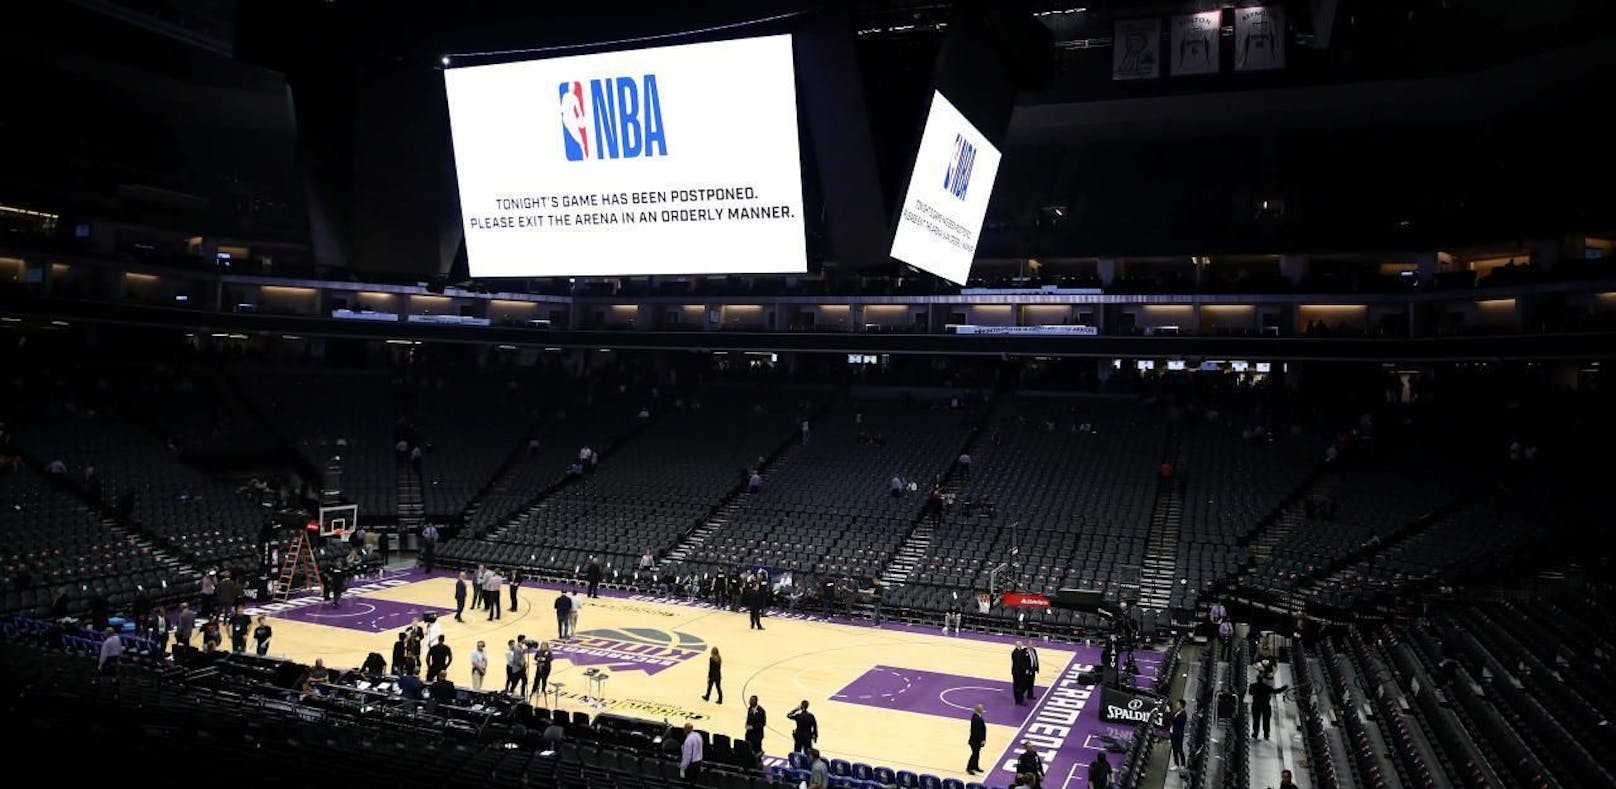 Die Zuschauer werden über den Cube informiert: Auch das NBA-Spiel zwischen den New Orleans Pelicans und den Sacramento Kings wurde auf unbestimmte Zeit verschoben.